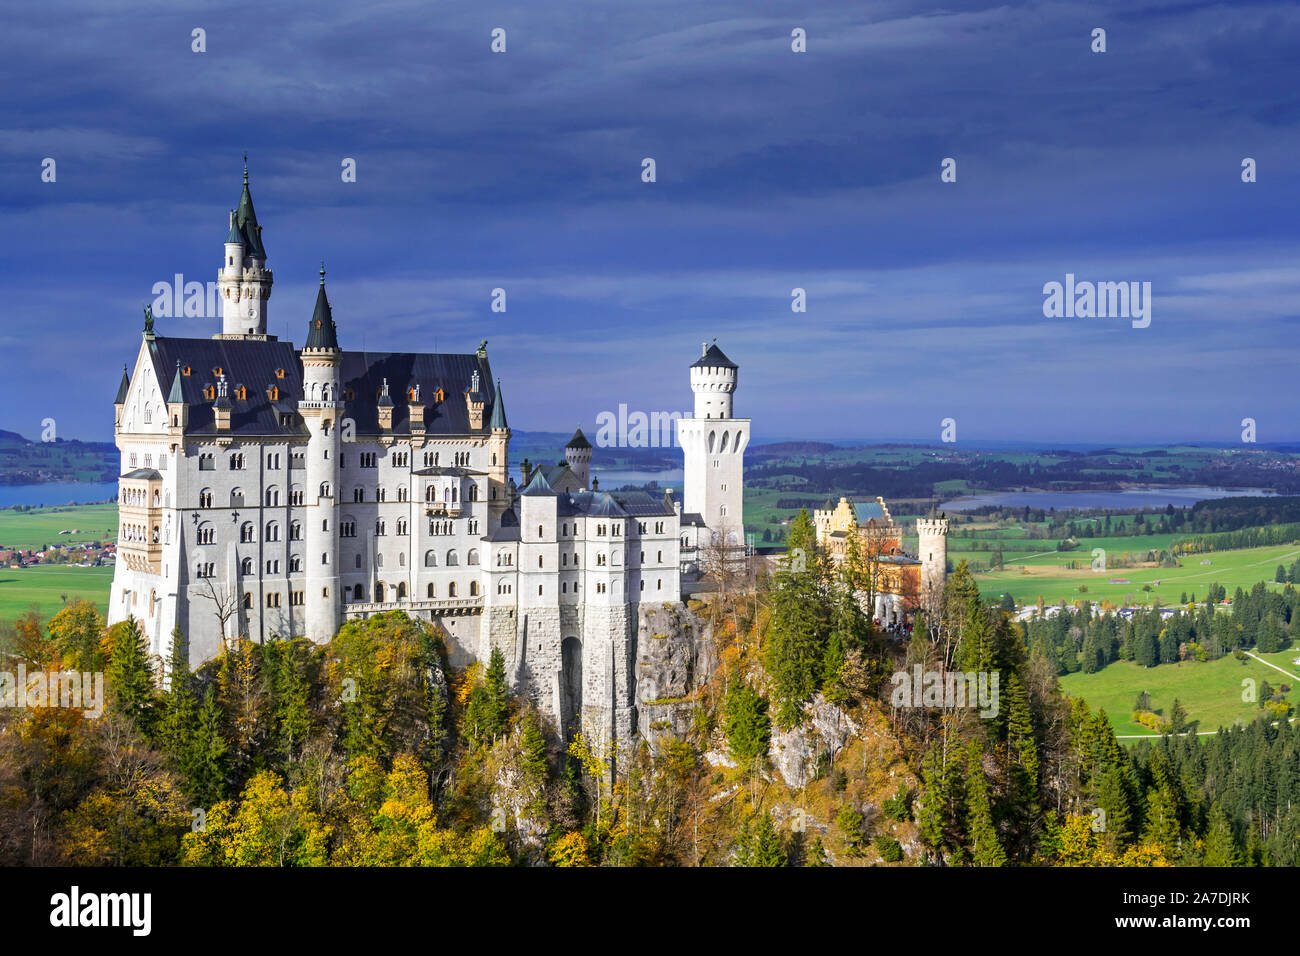 Schloss Neuschwanstein von der Marienbrücke im Herbst/Herbst gesehen, aus dem 19. Jahrhundert Neoromanischen Schloss Hohenschwangau, Bayern, Deutschland Stockfoto